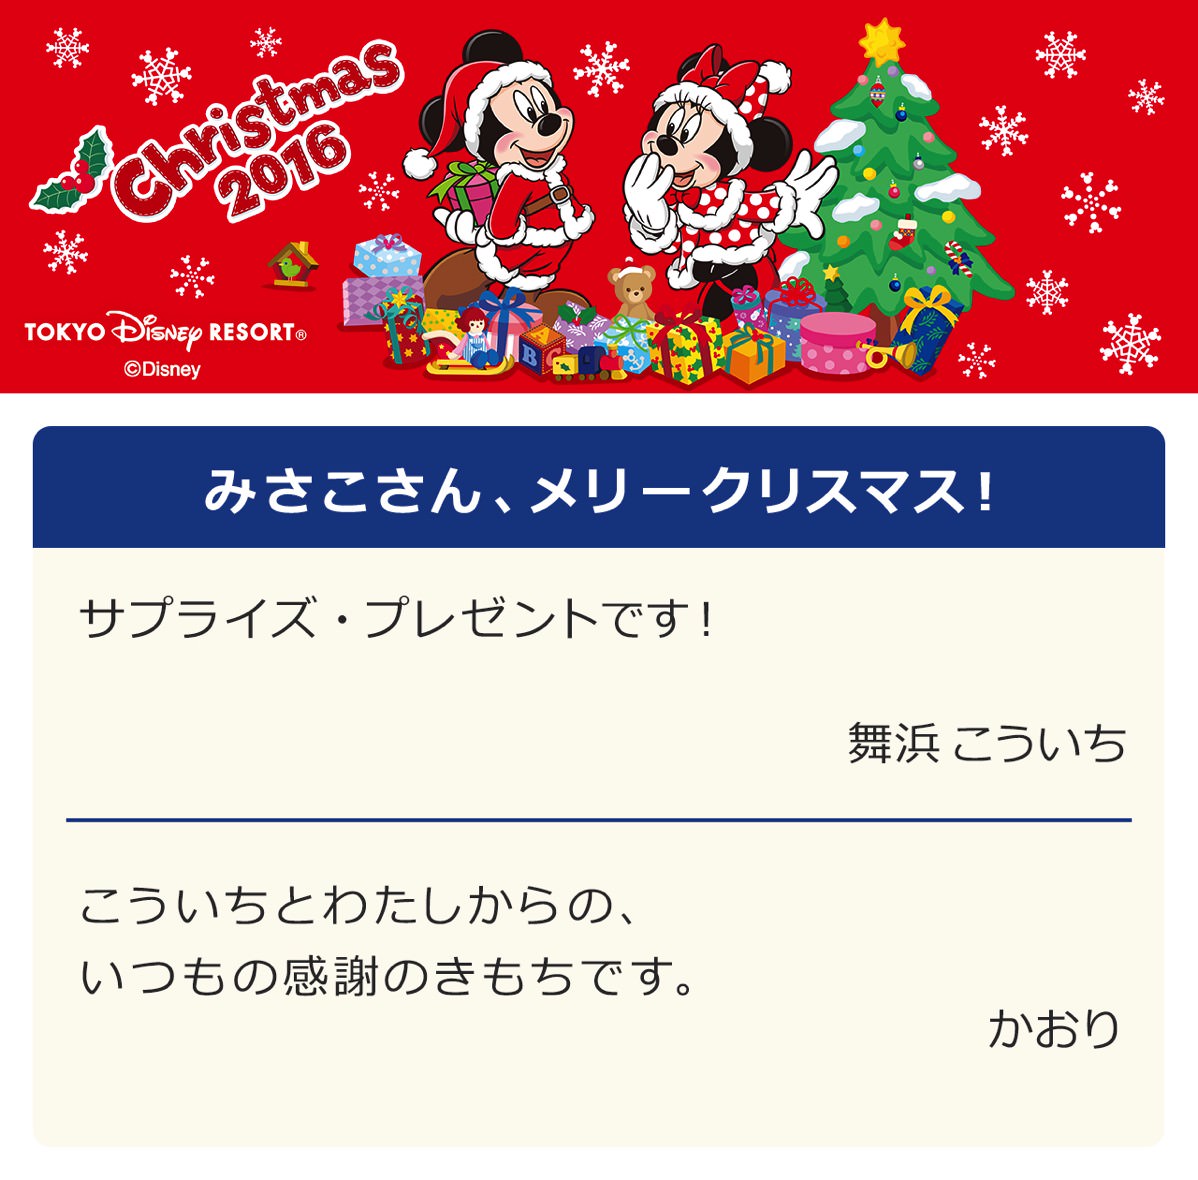 ラッピング付きでプレゼントにぴったり 東京ディズニーランド クリスマスギフトにぴったりなグッズ Dtimes